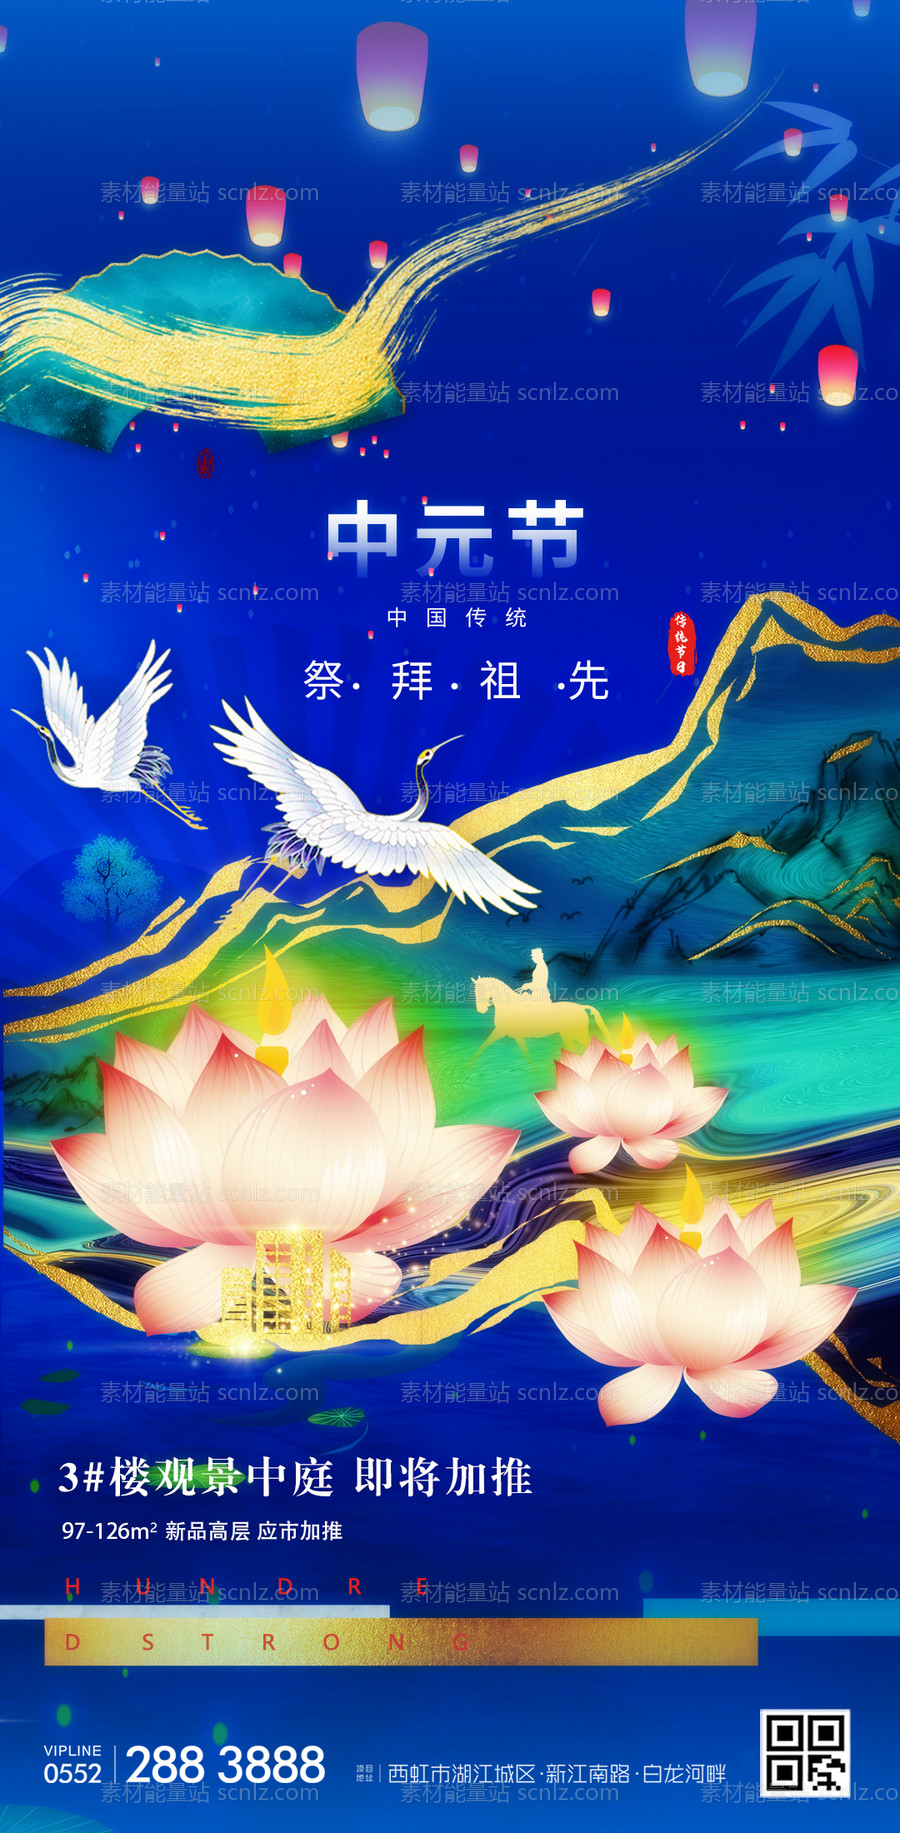 素材能量站-地产中元节鎏金意境海报